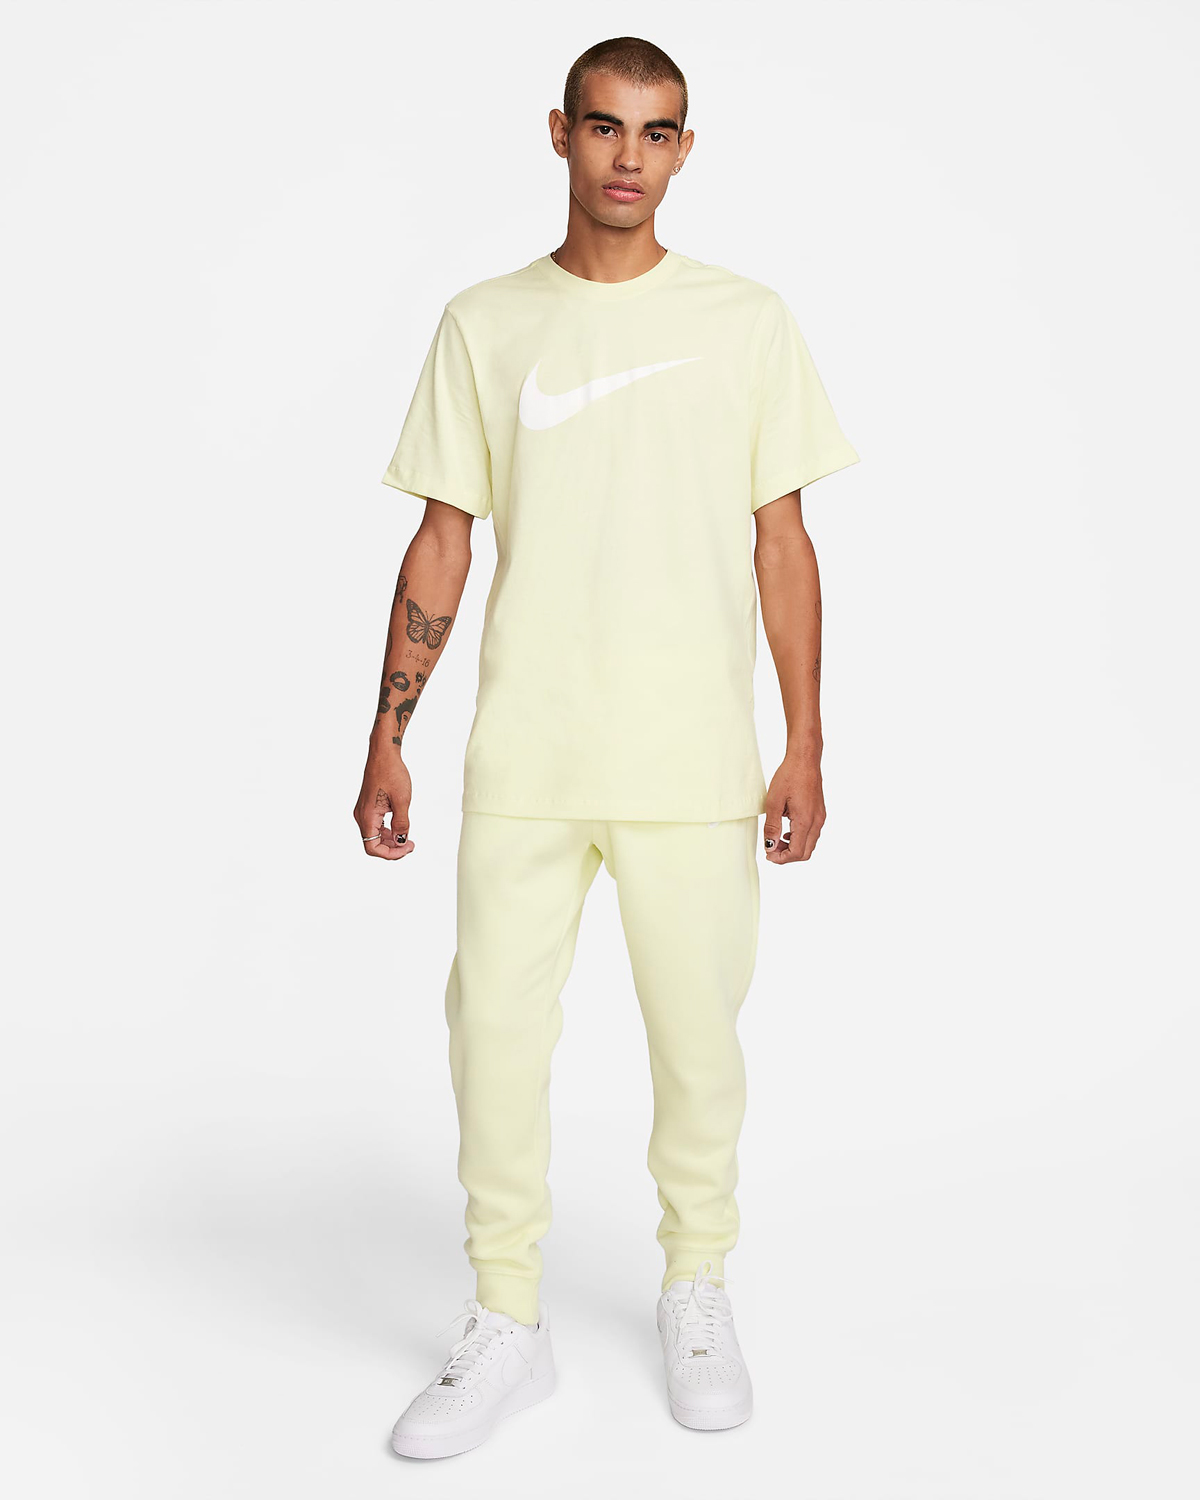 Nike-Sportswear-Swoosh-T-Shirt-Luminous-Green-Outfit